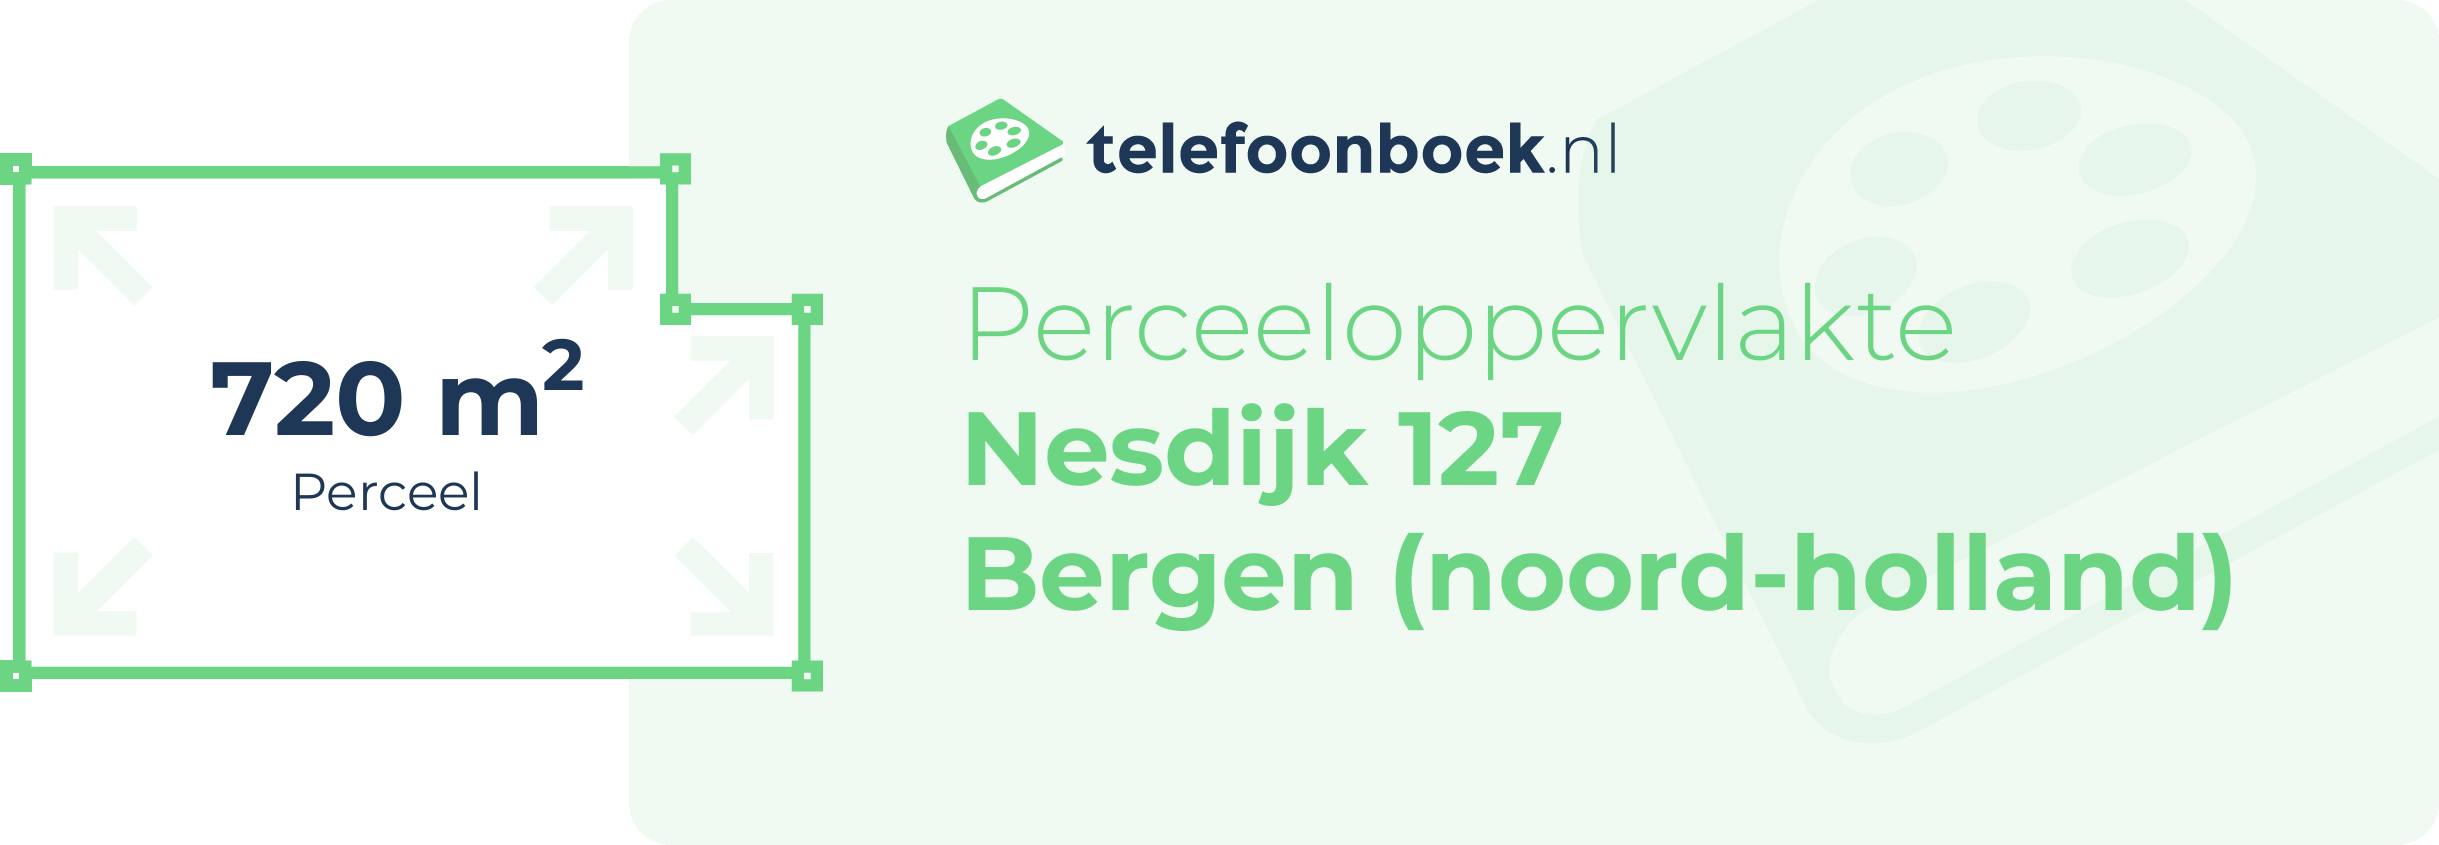 Perceeloppervlakte Nesdijk 127 Bergen (Noord-Holland)